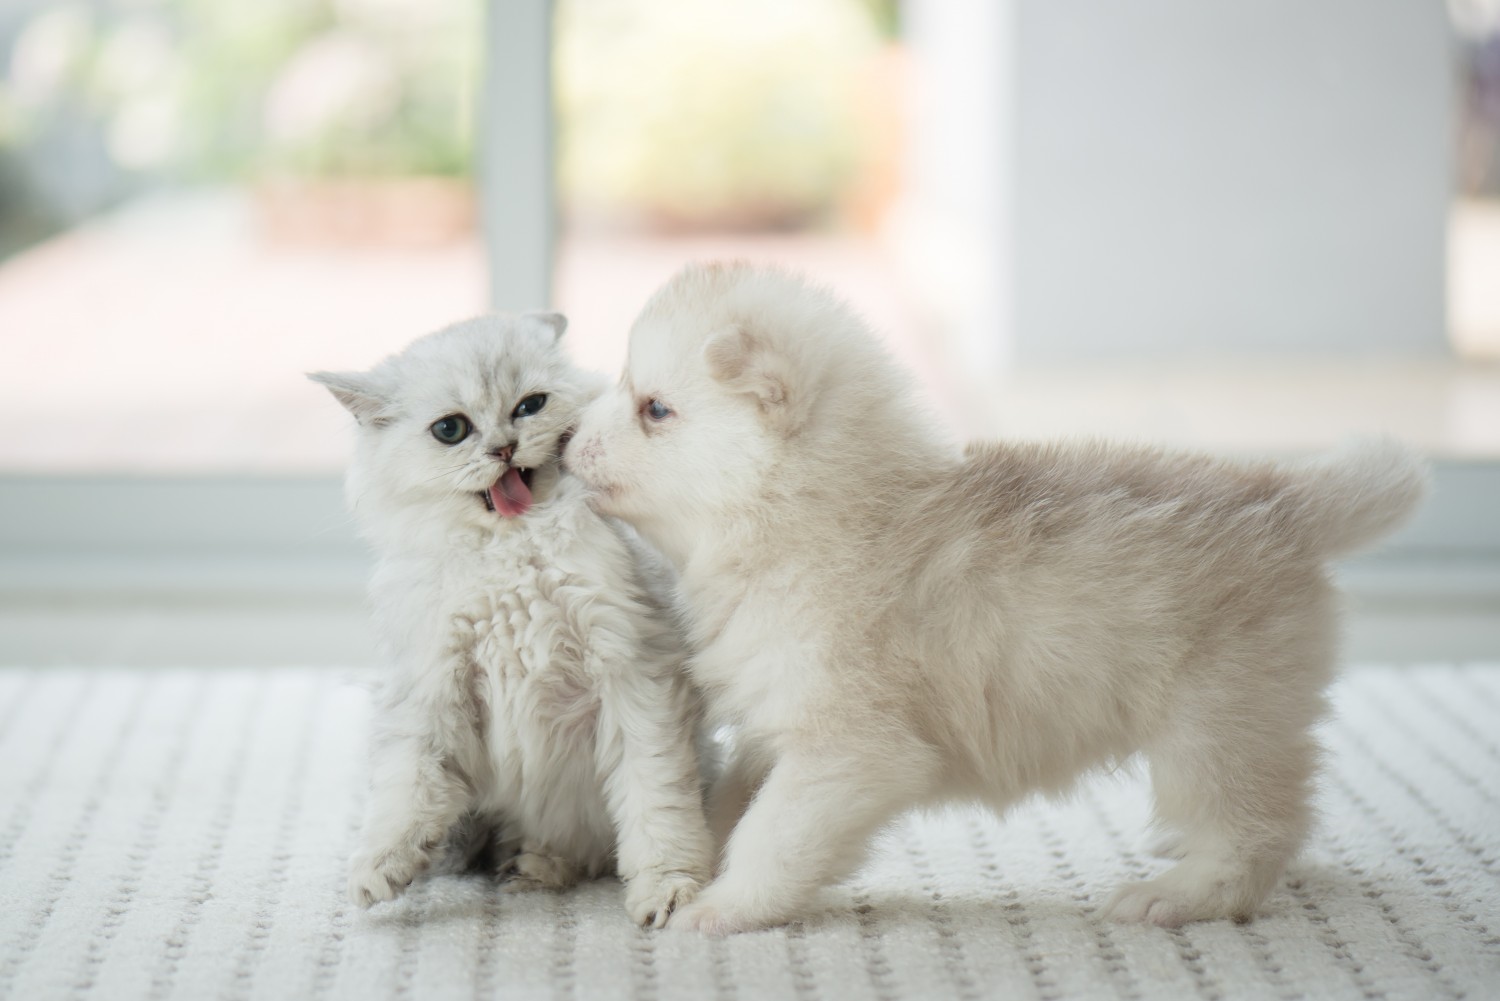 White puppy and Kitten